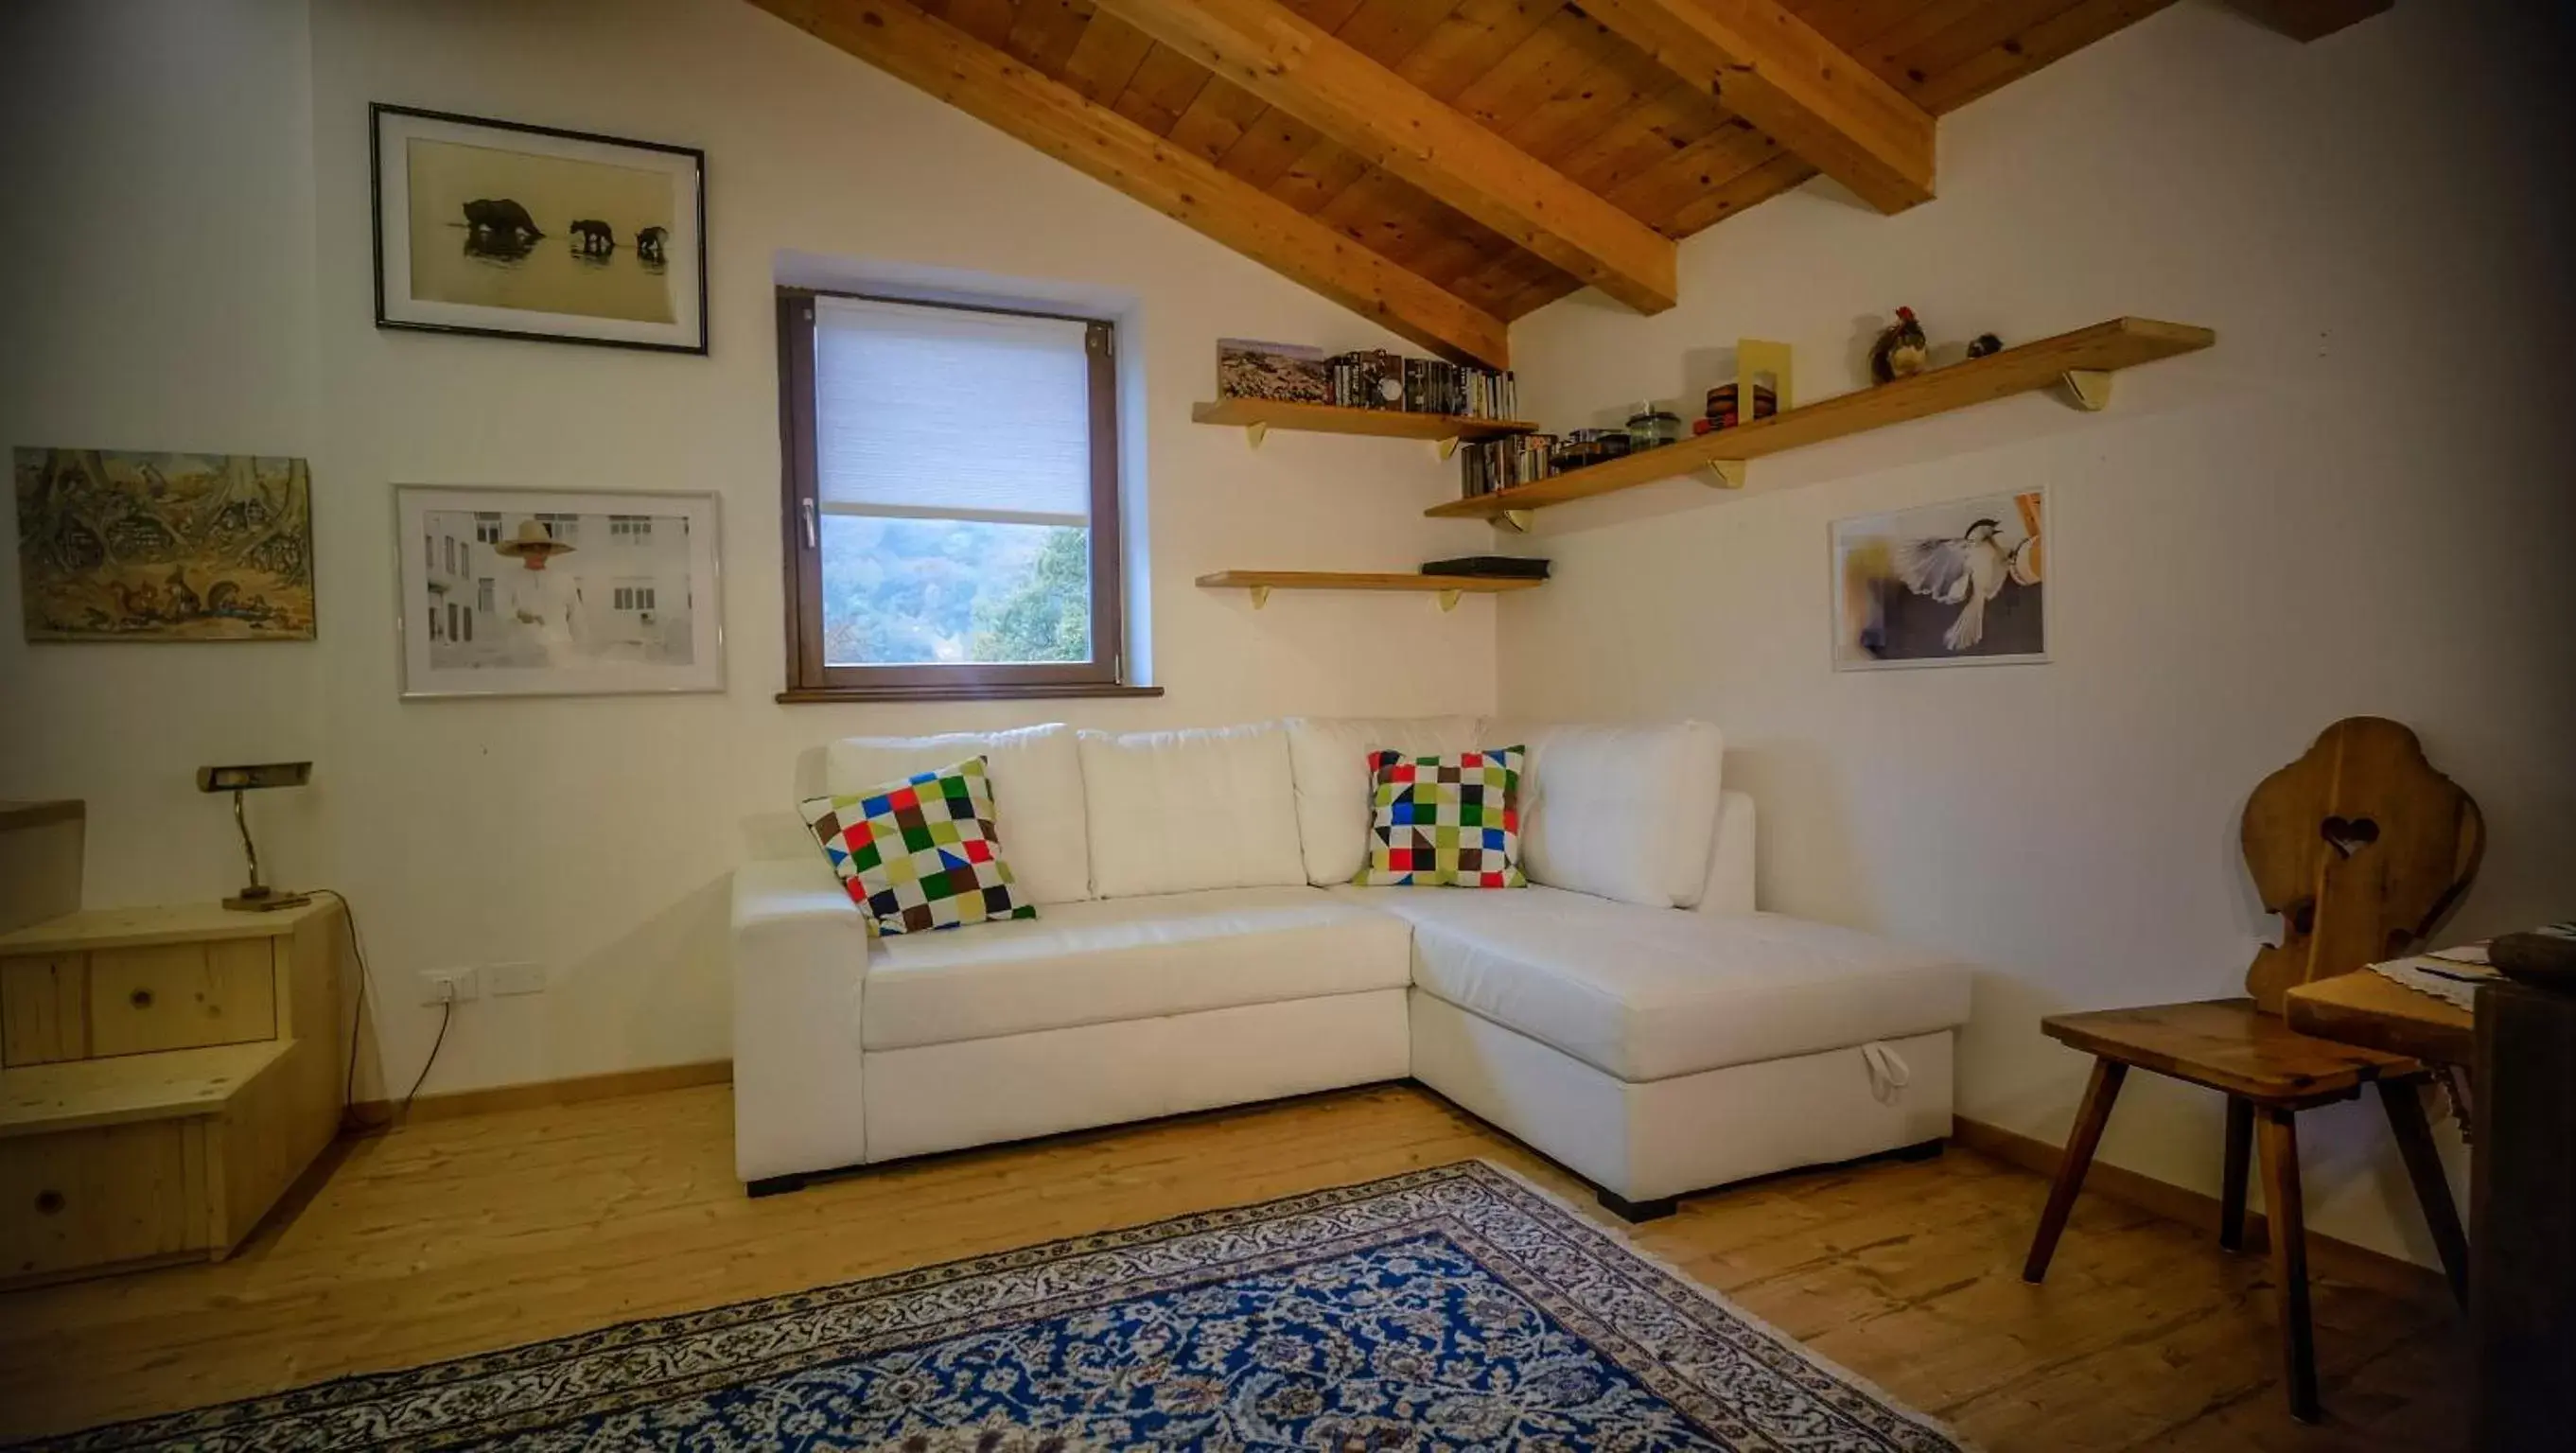 Living room, Seating Area in Maso Scricciolo Farm House